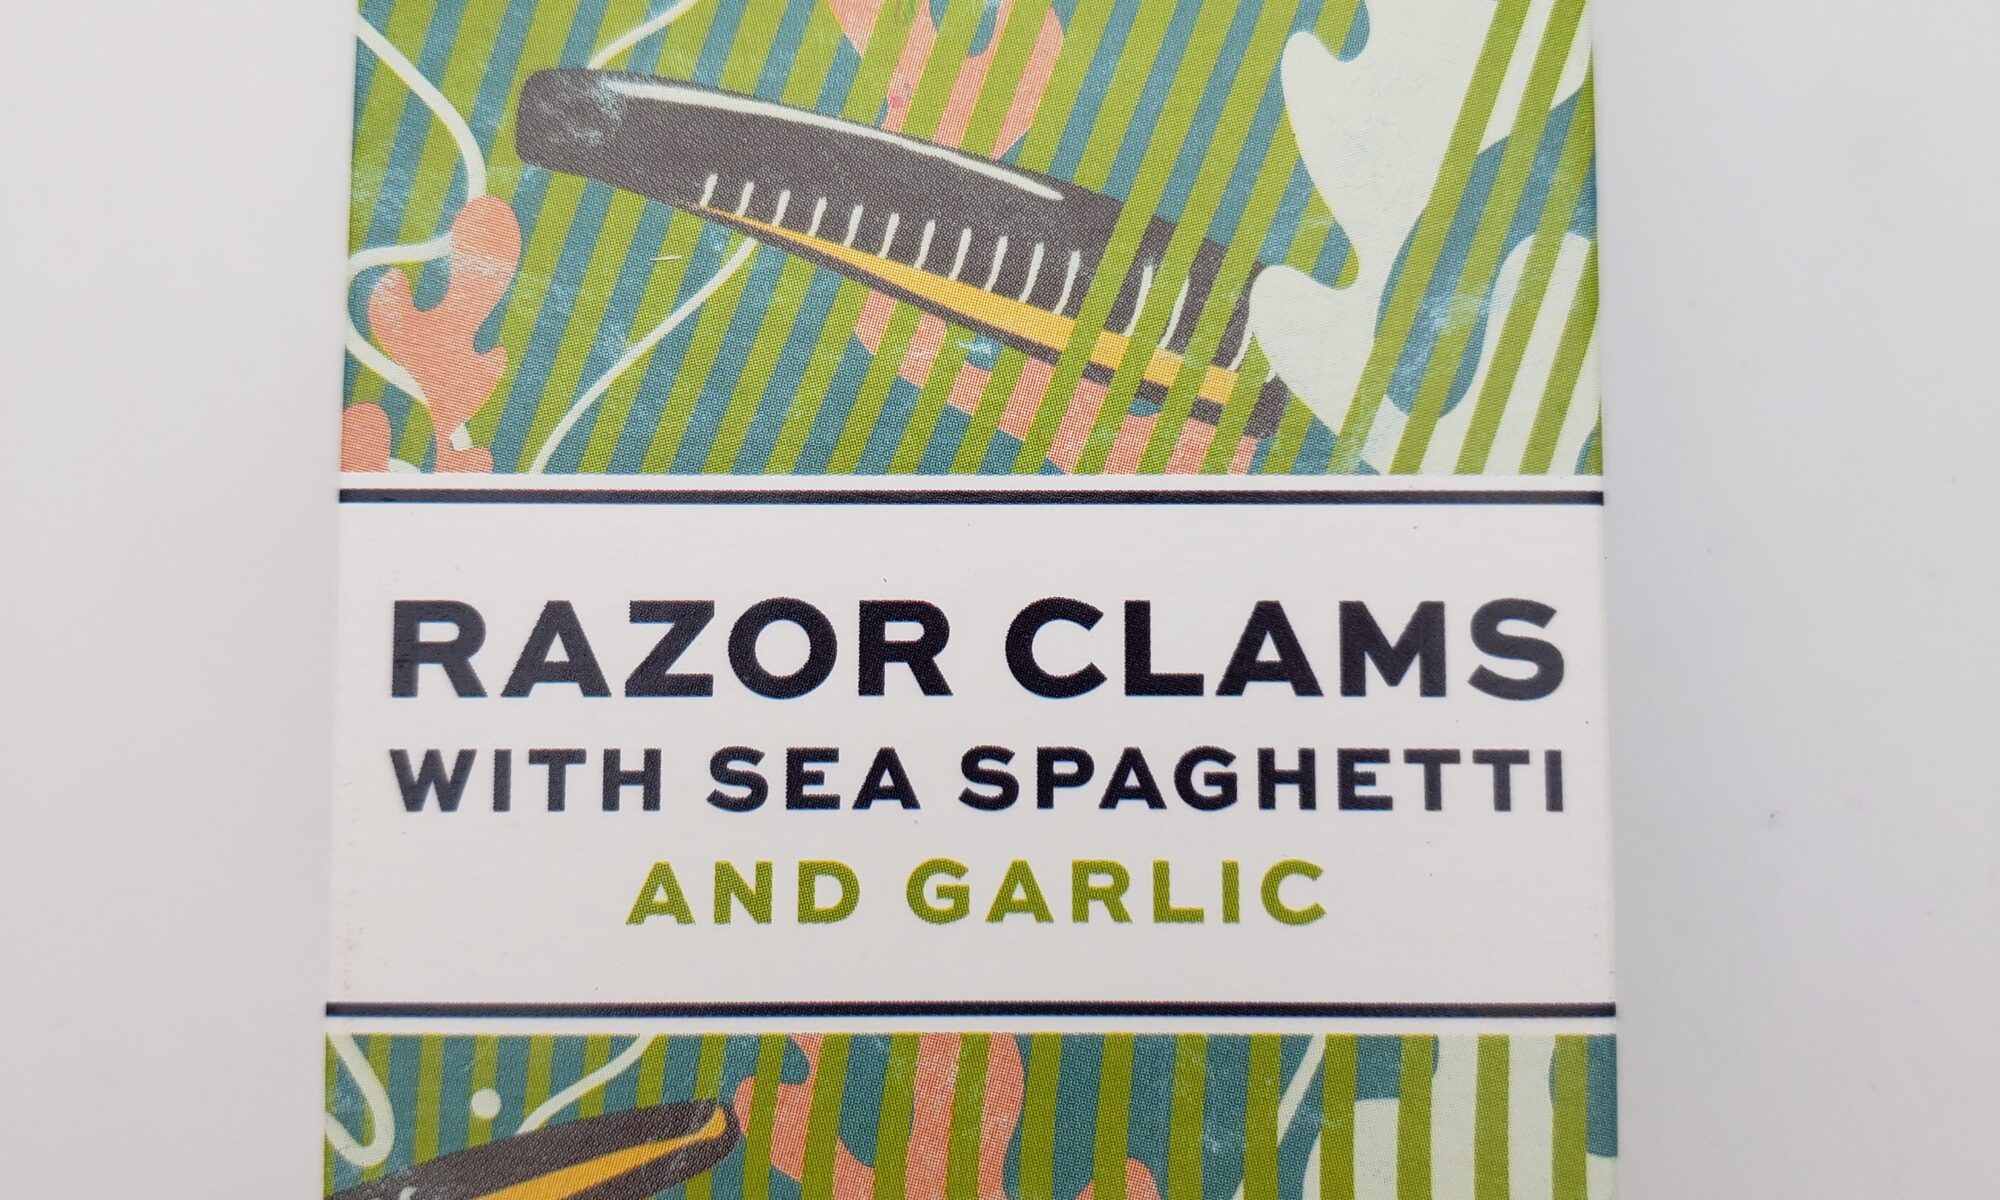 Image of Porto Muinos razor clams with sea spaghetti